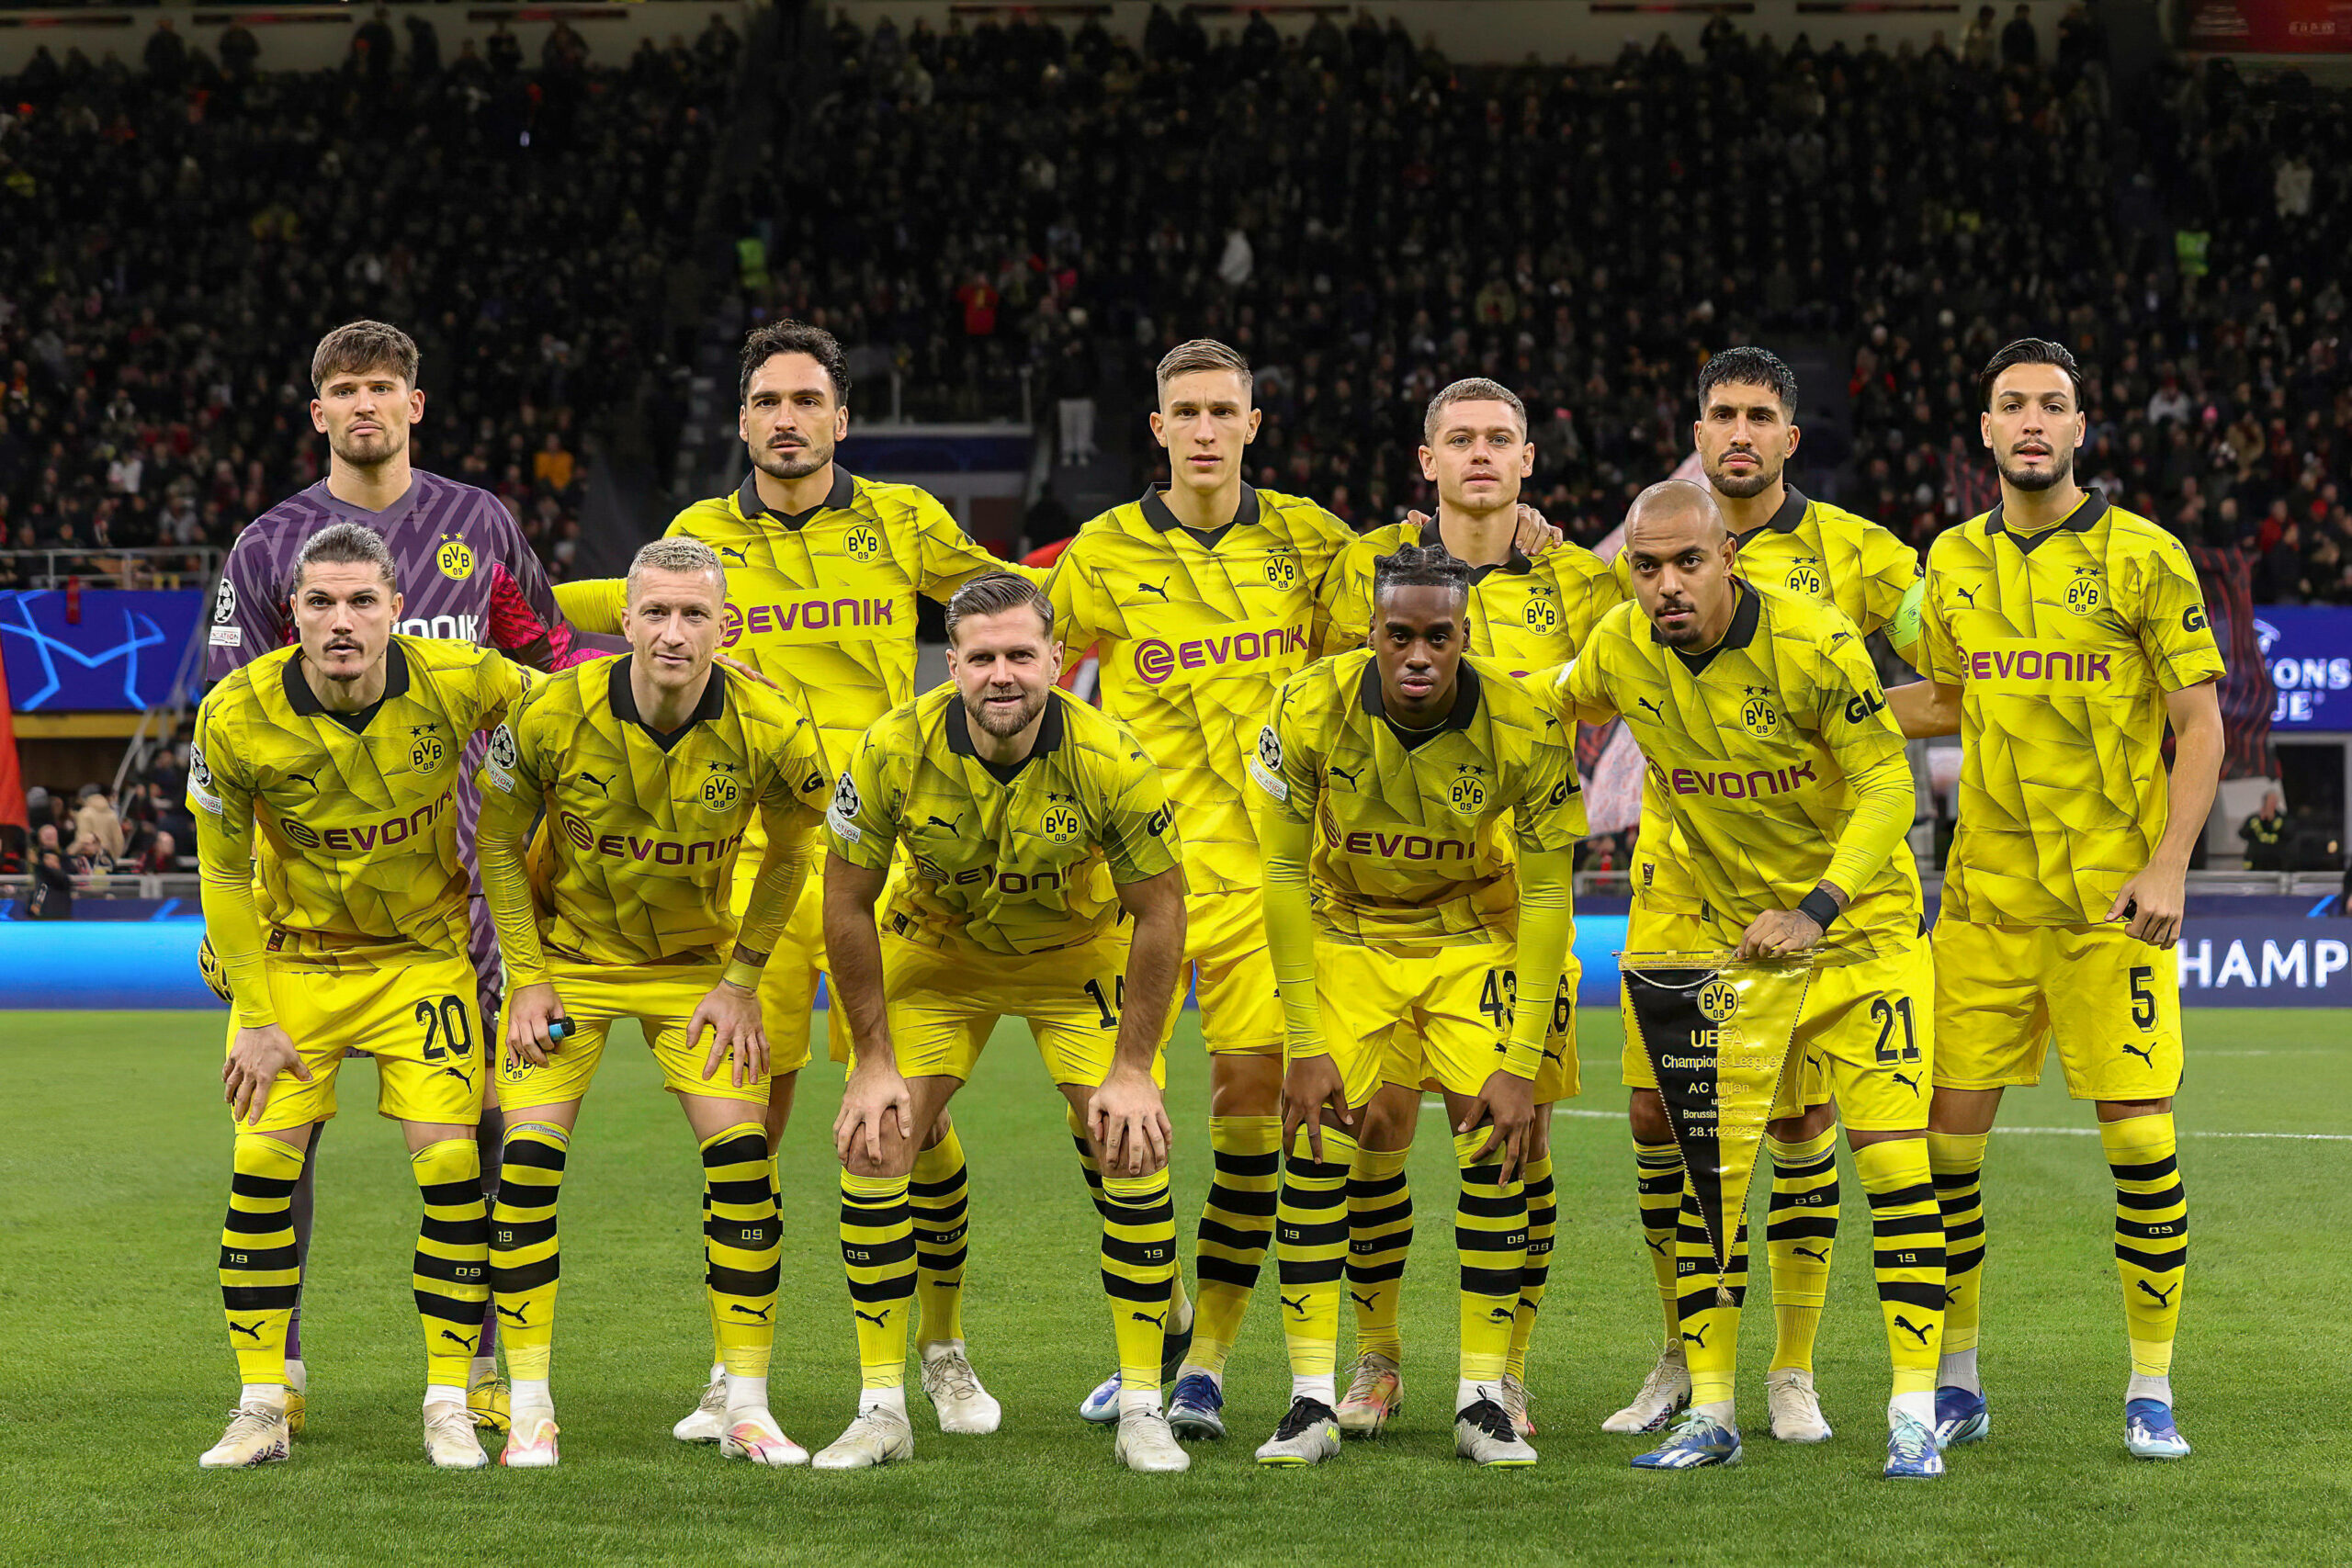 Die Startelf des BVB vor dem Champions League-Spiel in Mailand beim obligatorischen Teamfoto